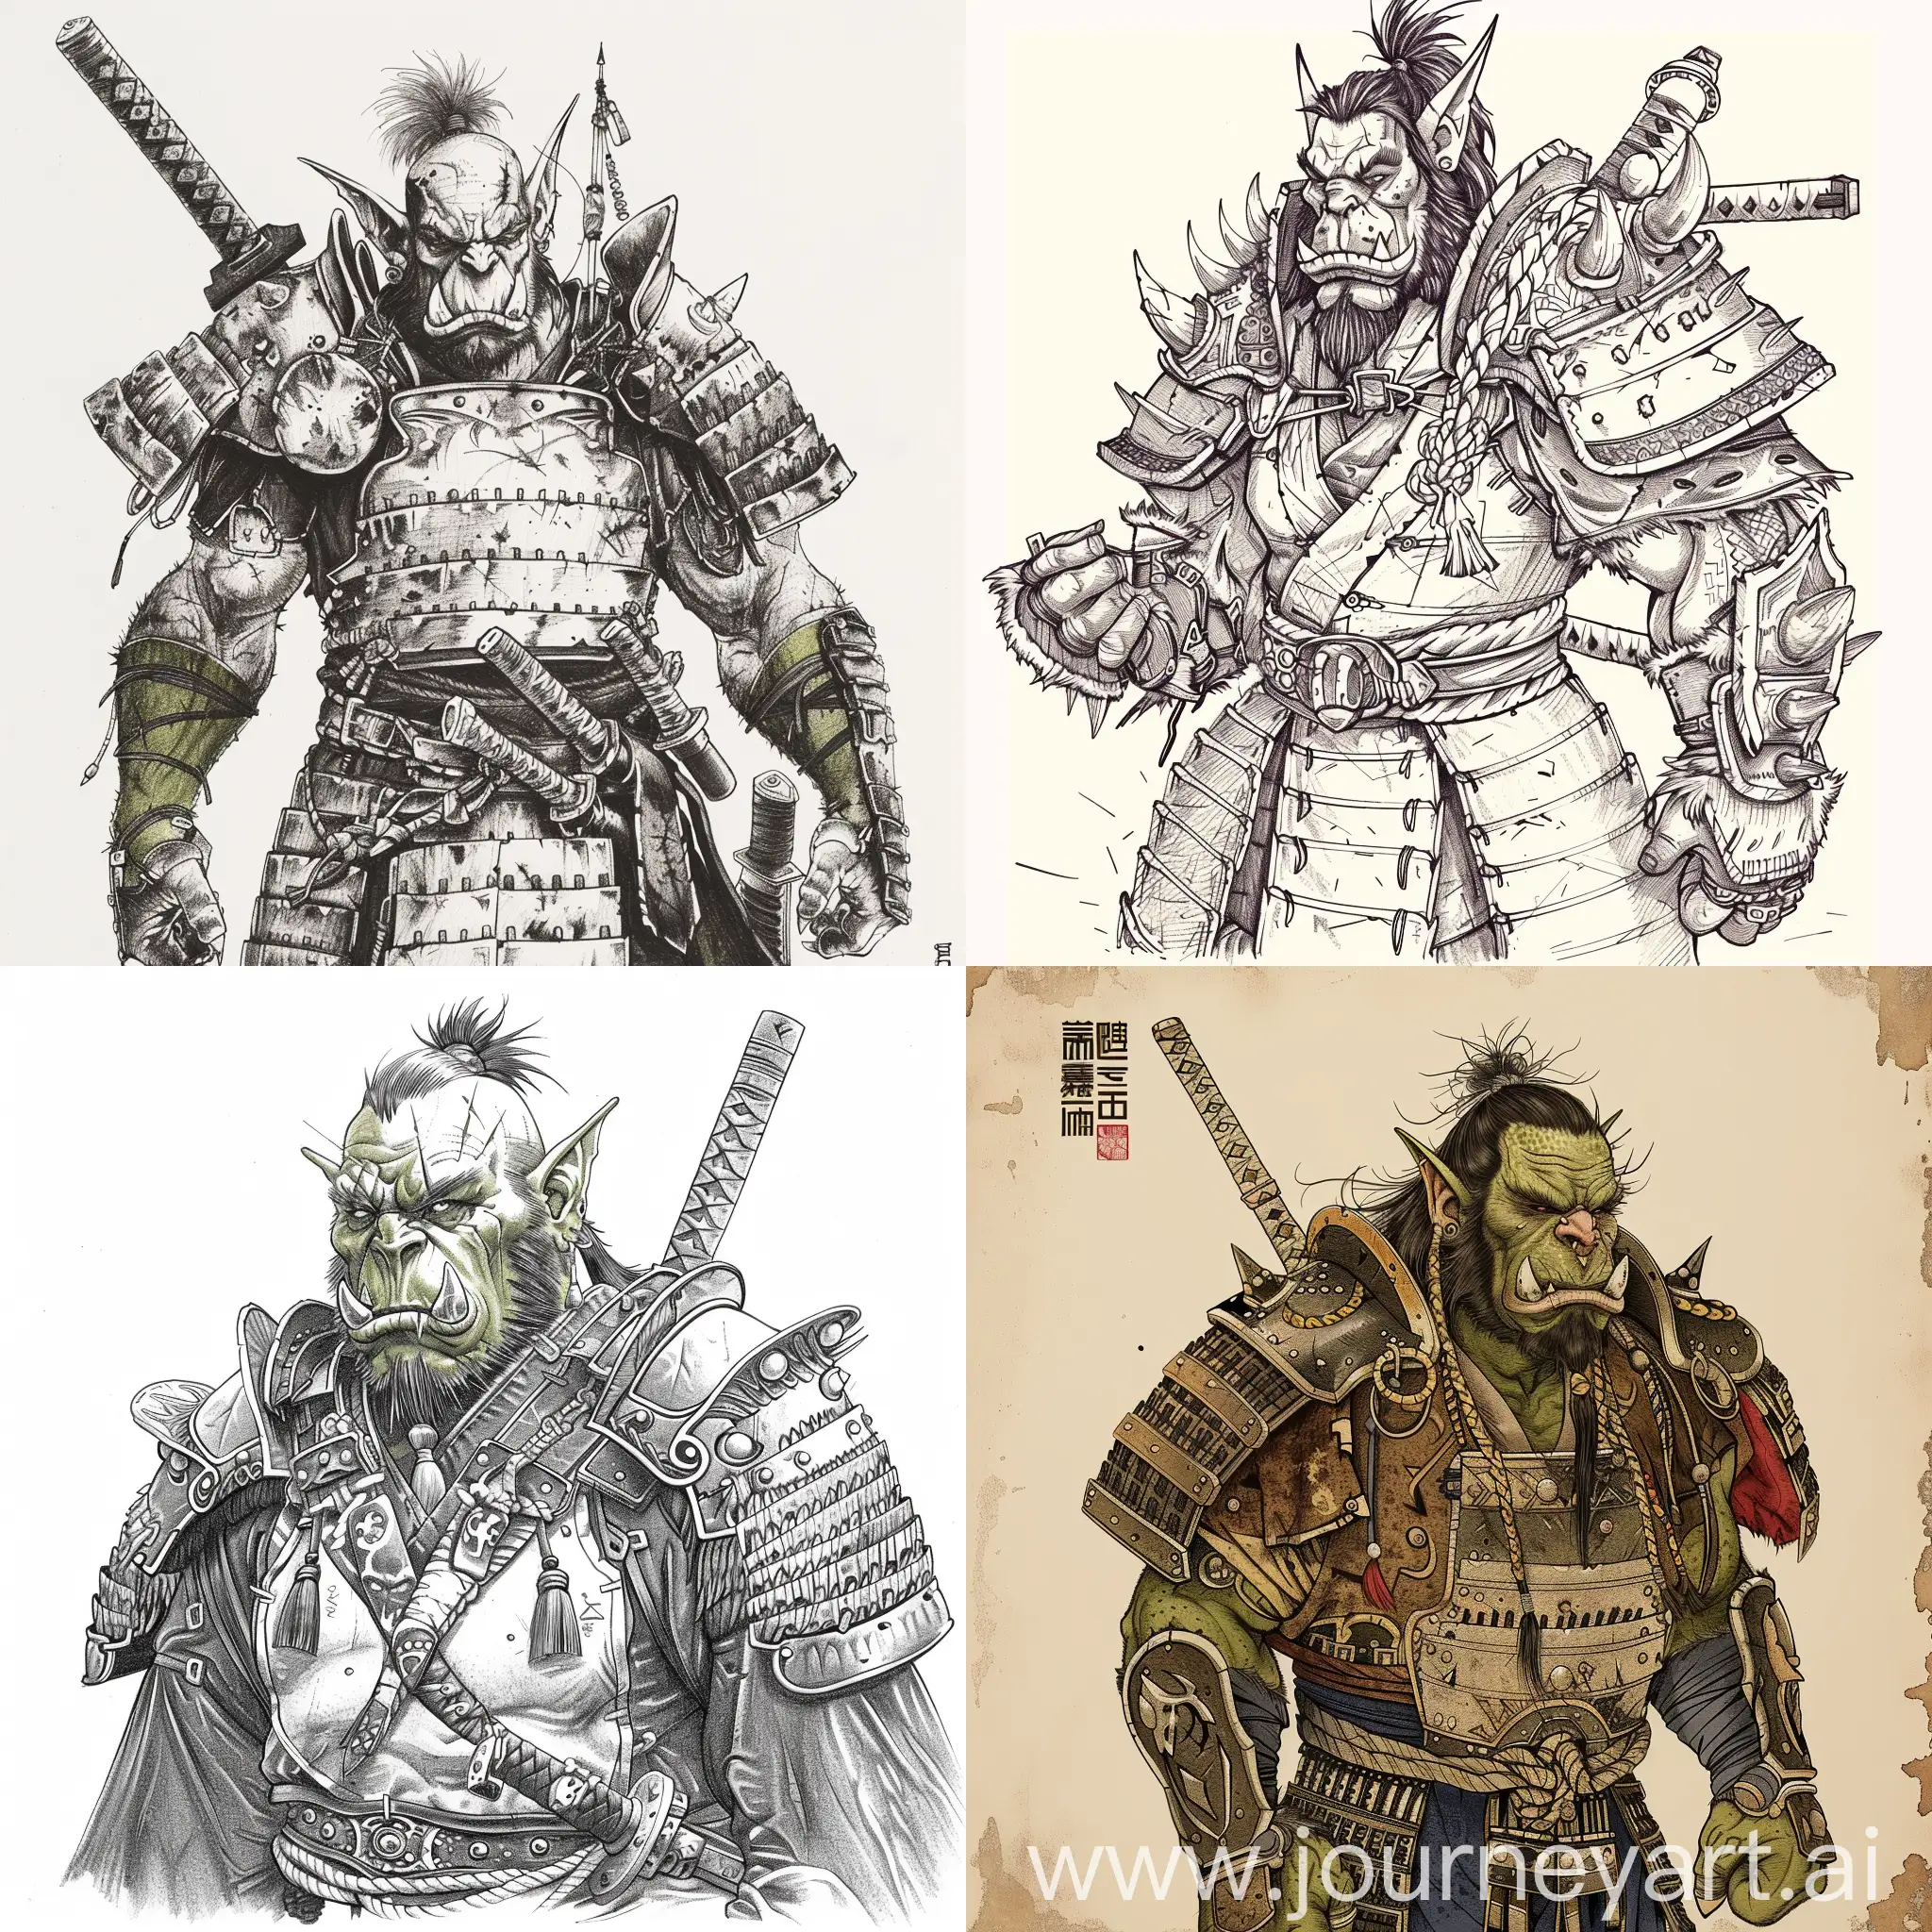 Орк mag'har blademaster из клана Burning blade Clan, из вселенной World of Warcraft, одет в броню Samurai с sashimono за спиной. Нарисуй его в classic japanese style